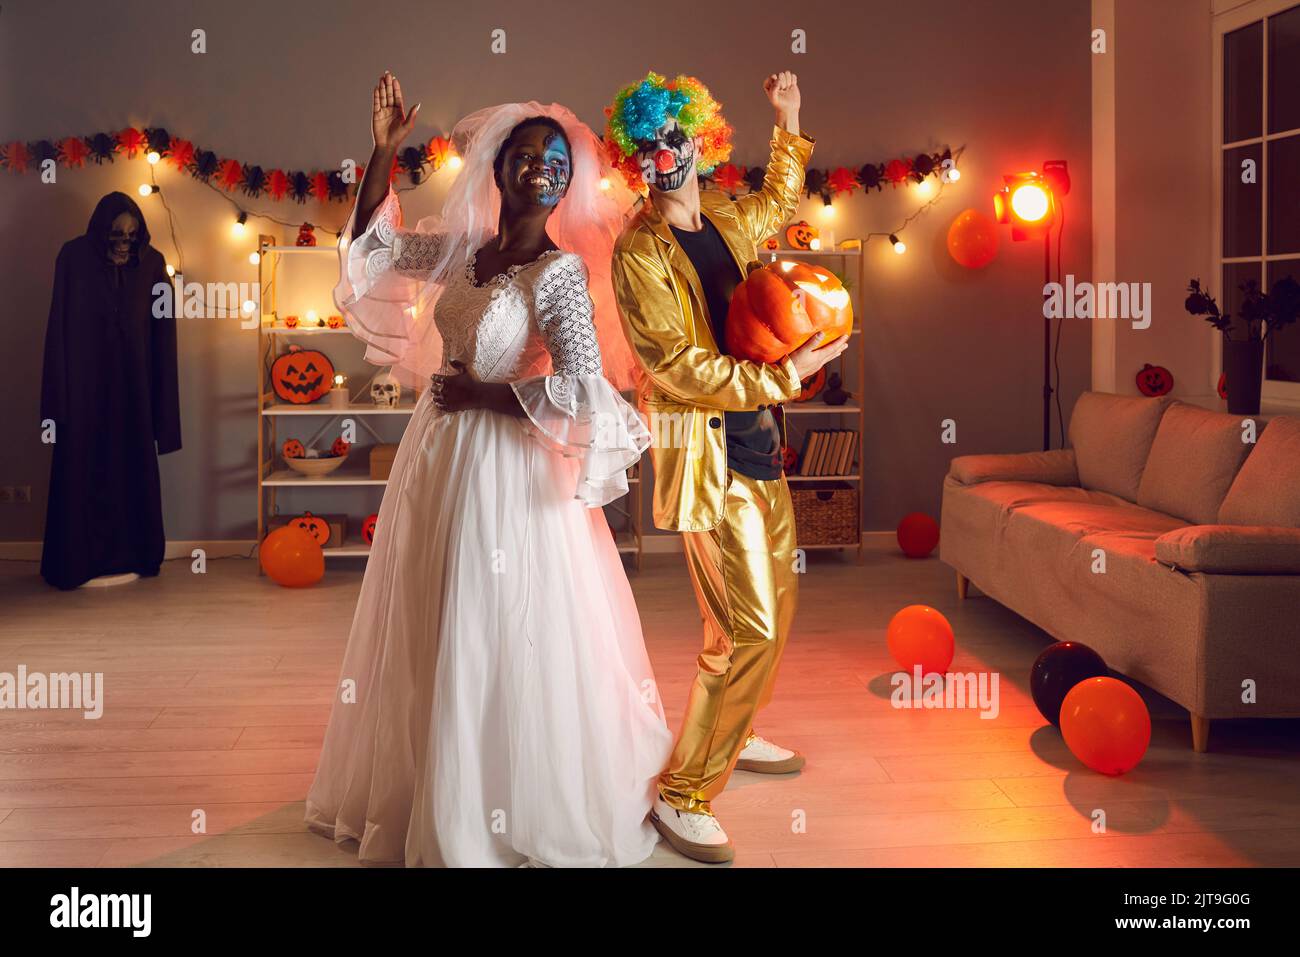 Zwei glückliche Freunde in Dead Bride und Clown Outfits gekleidet, die auf der Halloween Party Spaß haben Stockfoto